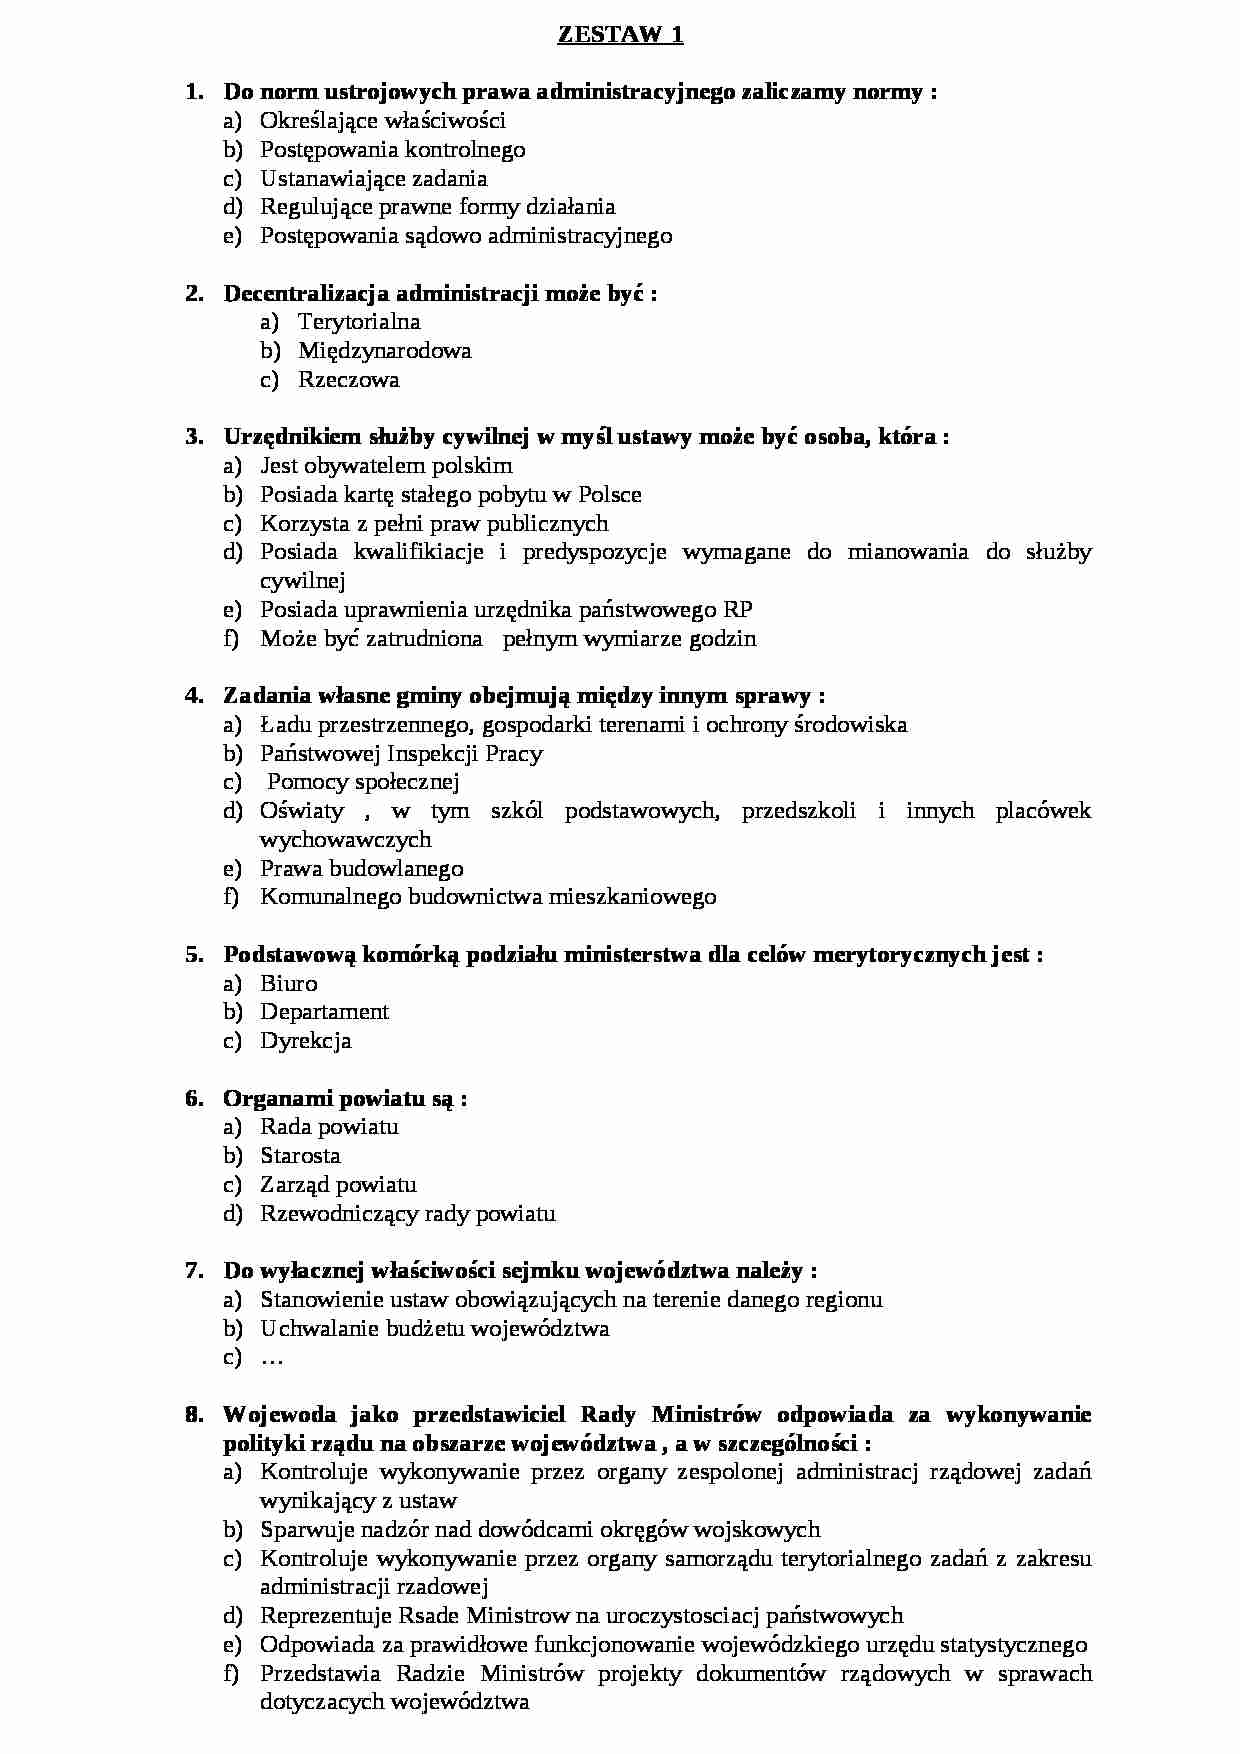  Prawo administracyjne -  Egzamin zestaw 1a - strona 1